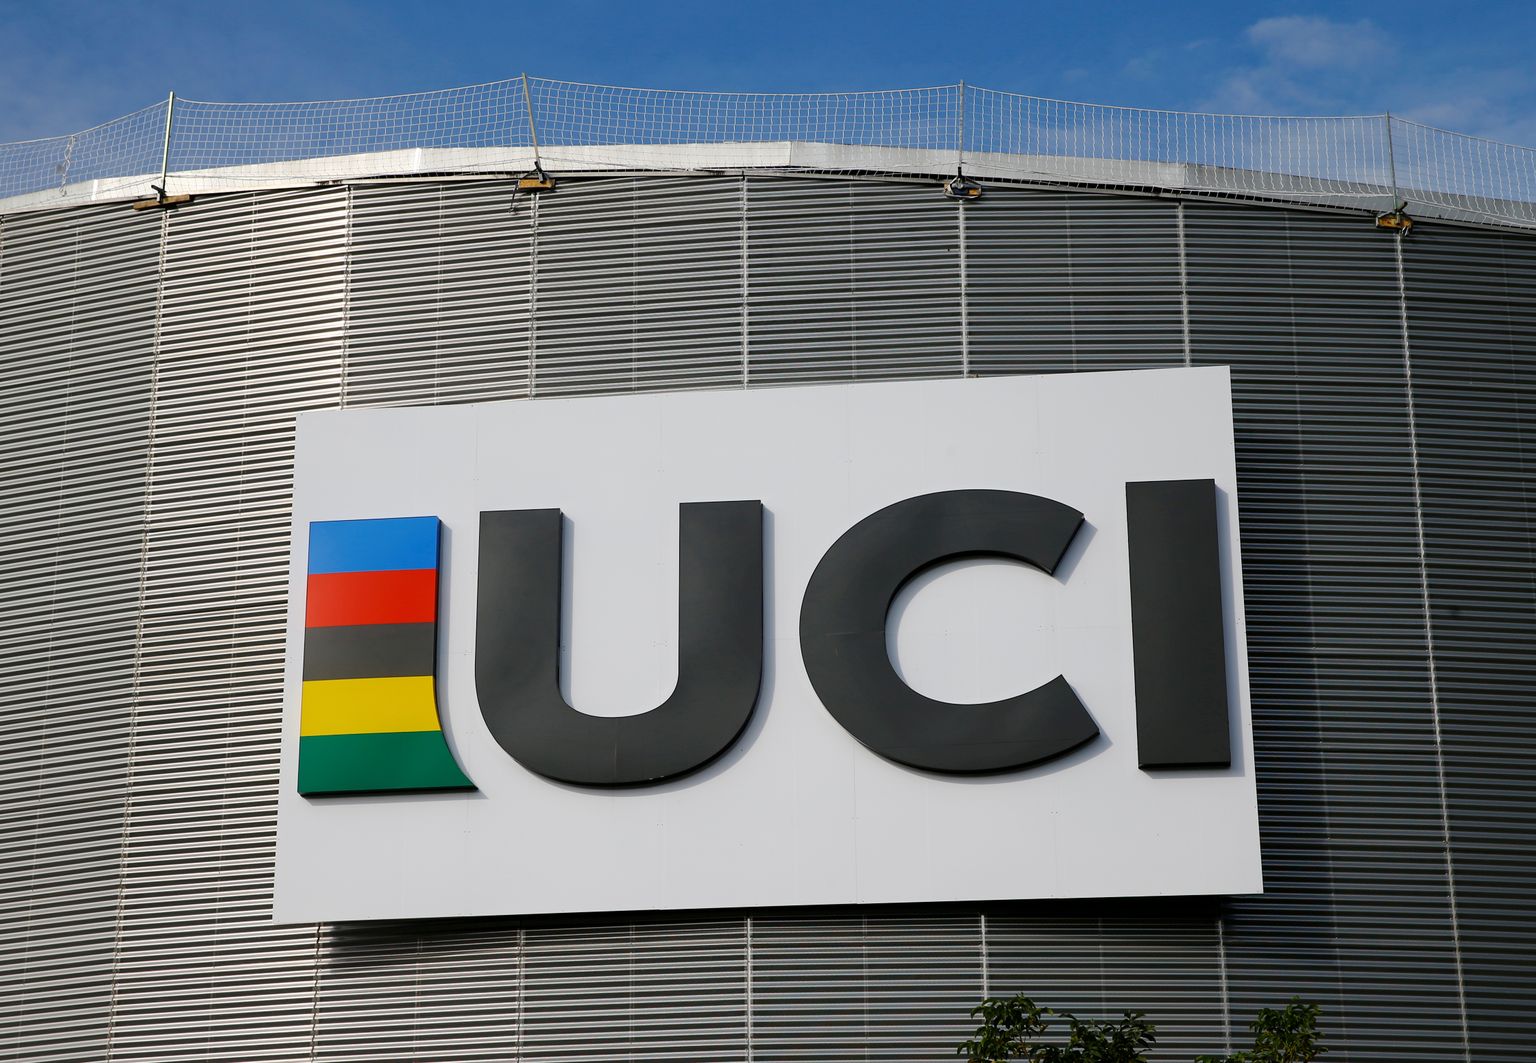 Rahvusvahelise jalgrattaliidu (UCI) logo.